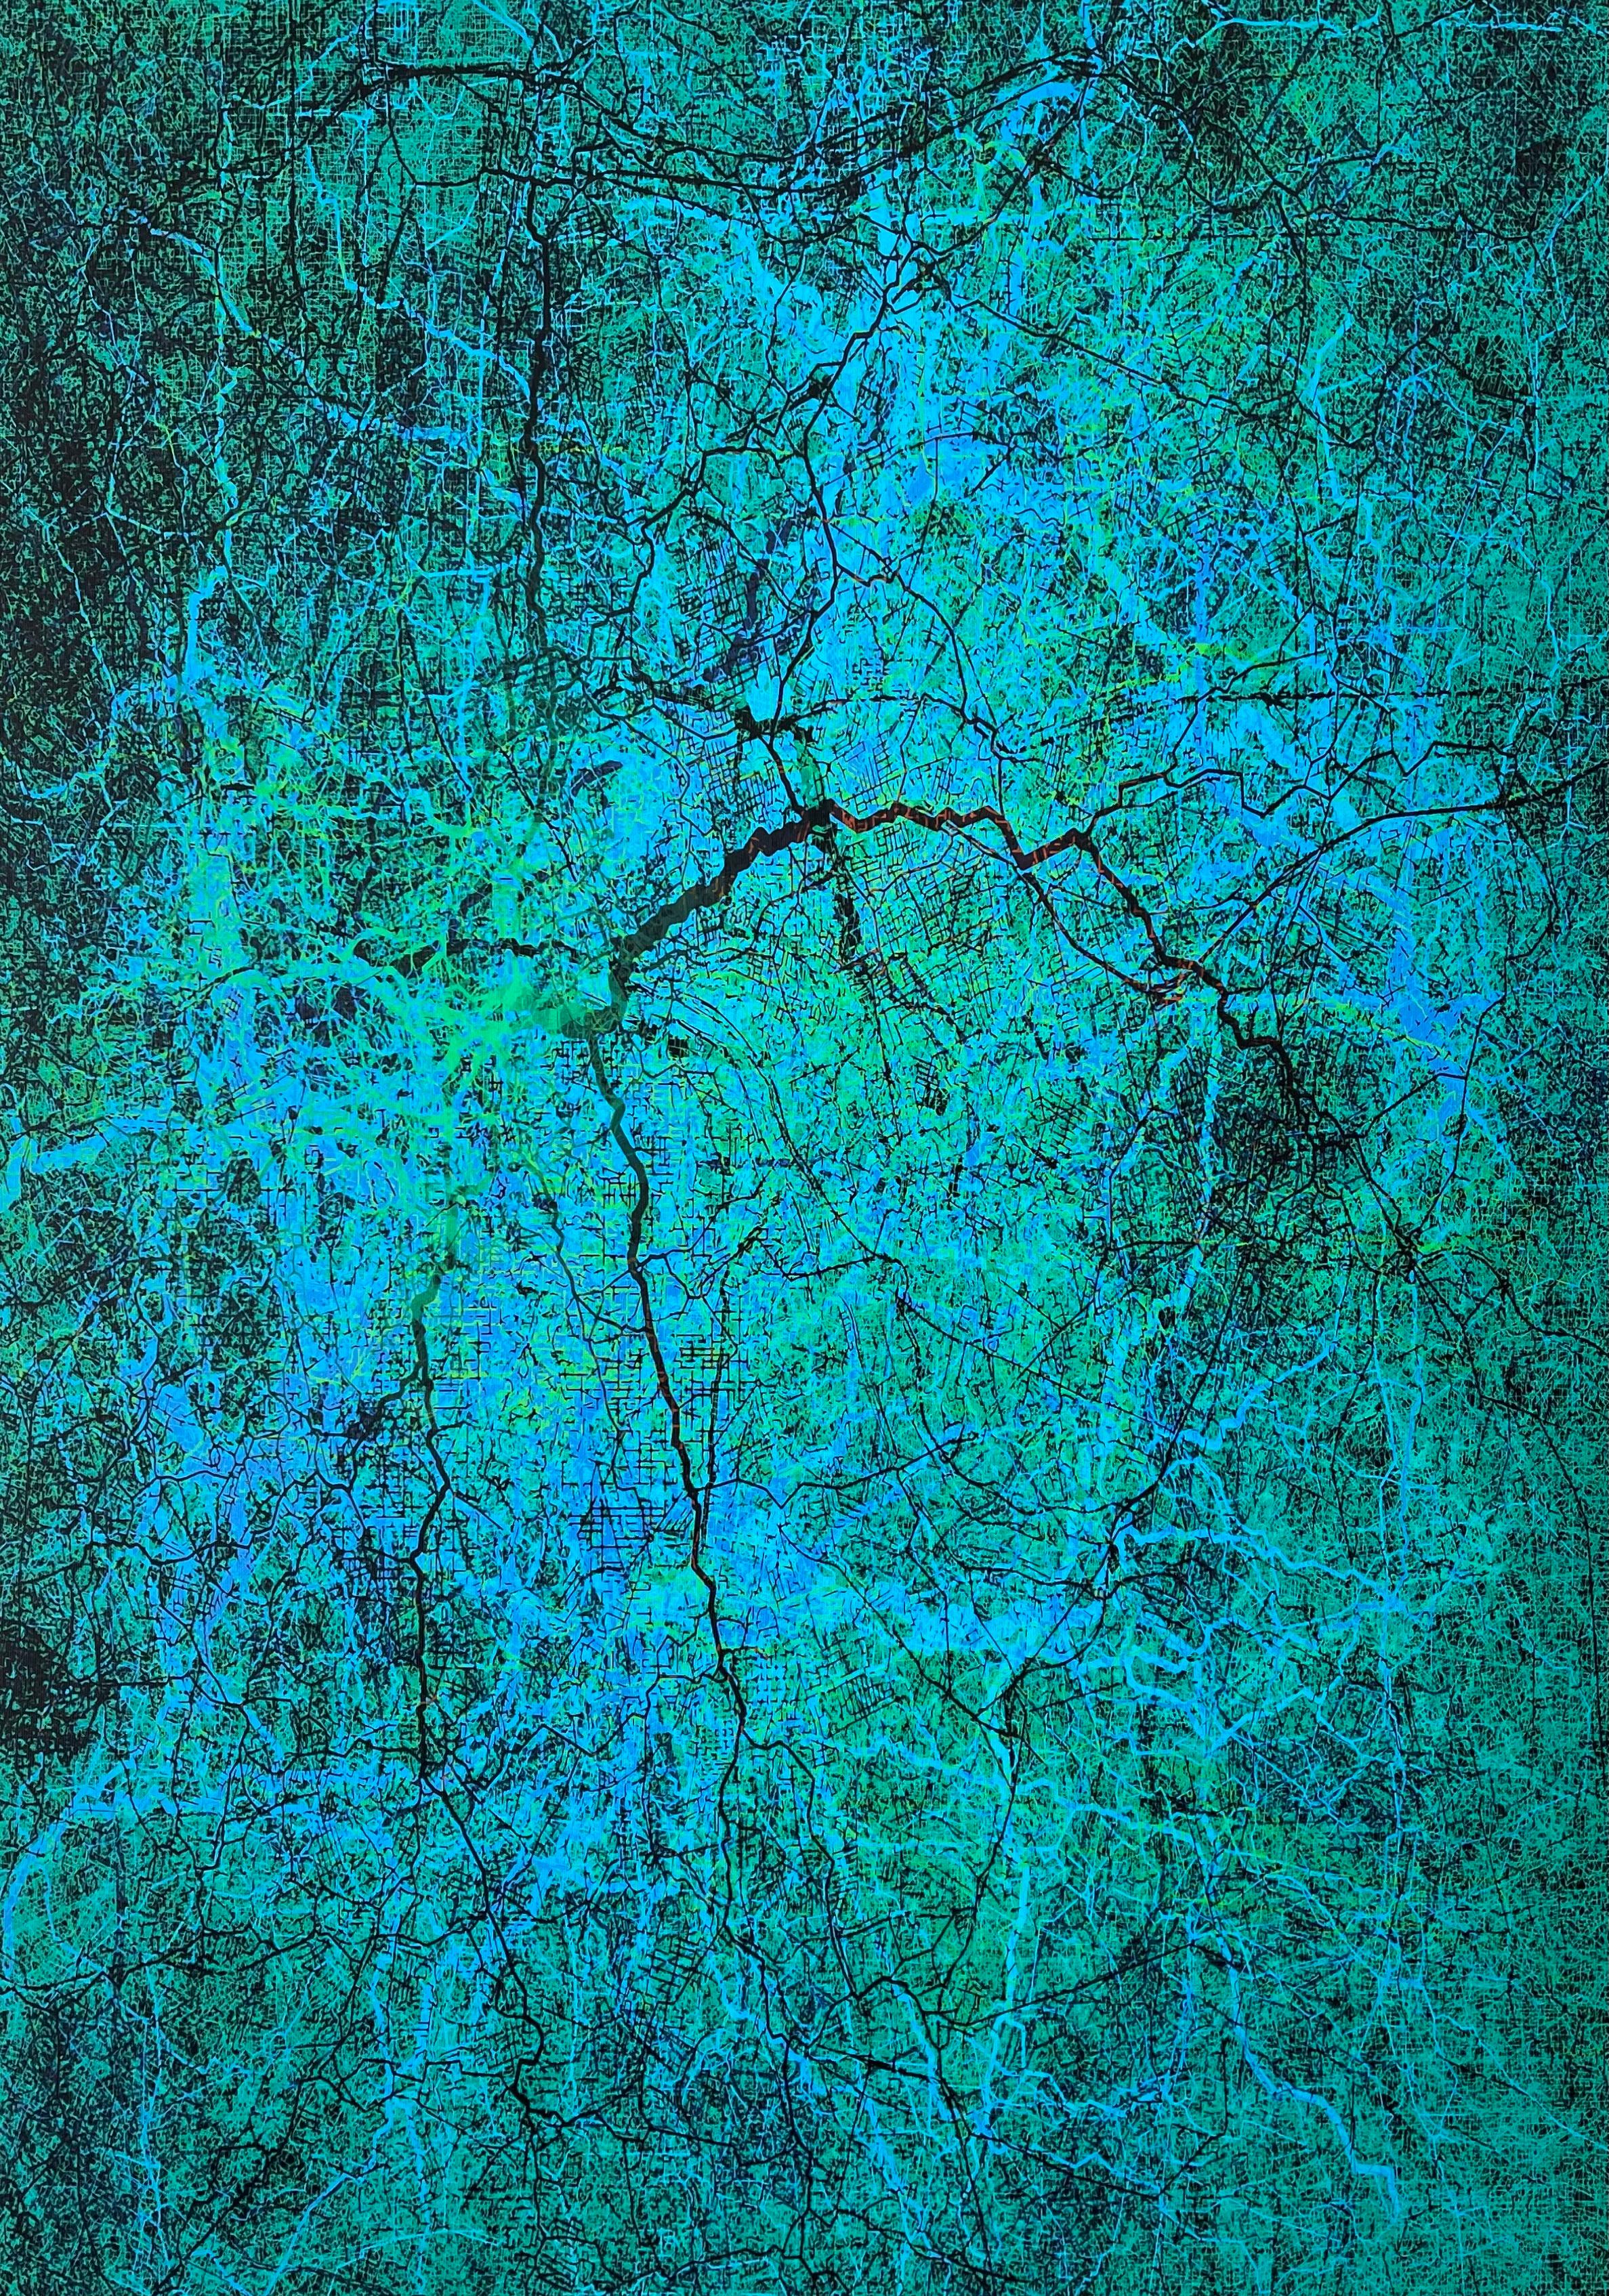 Lost In Blue - Art abstrait contemporain Peinture numérique Bleu